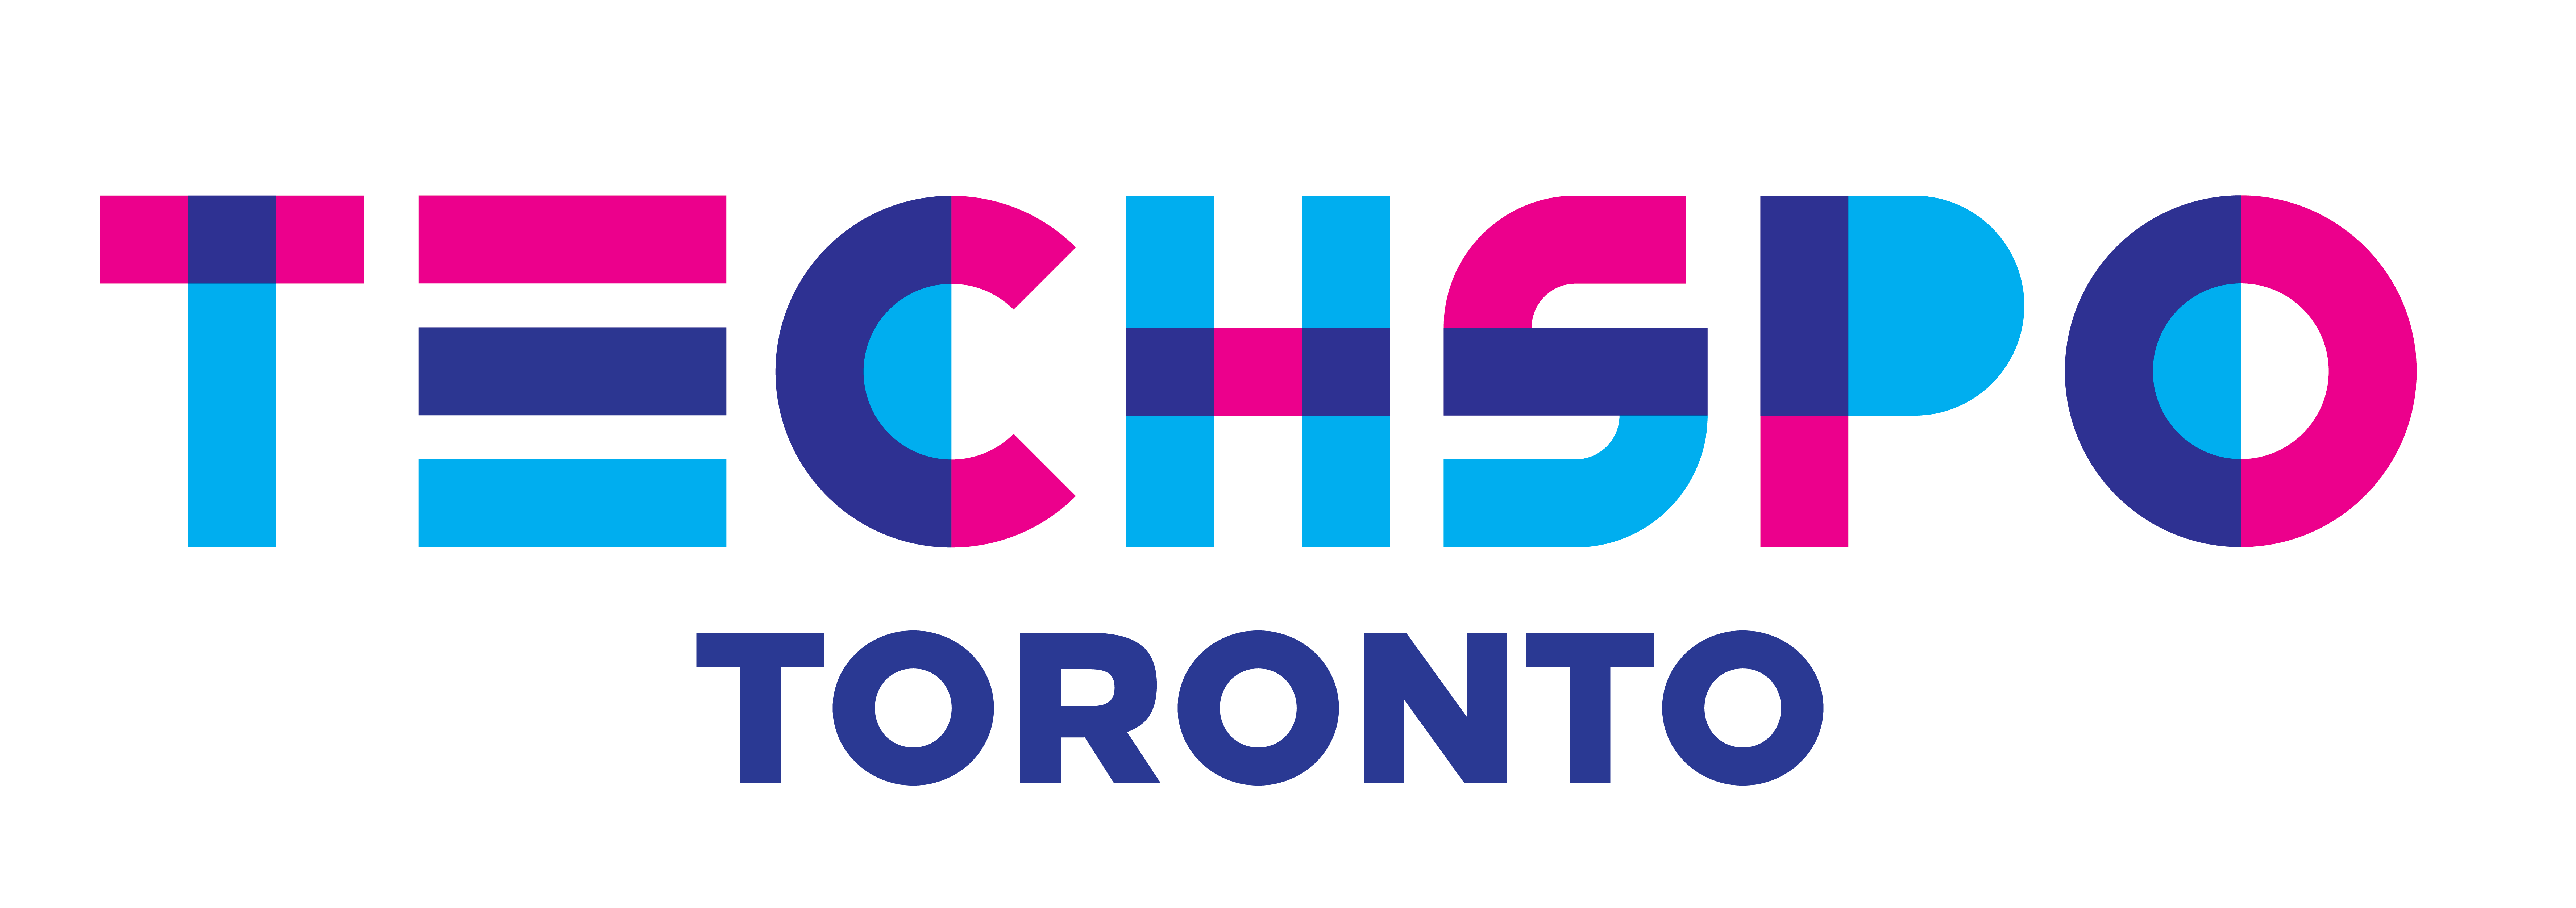 TECHSPO Toronto 2022 Technology Expo (Internet ~ Mobile ~ AdTech ~ MarTech ~ SaaS)